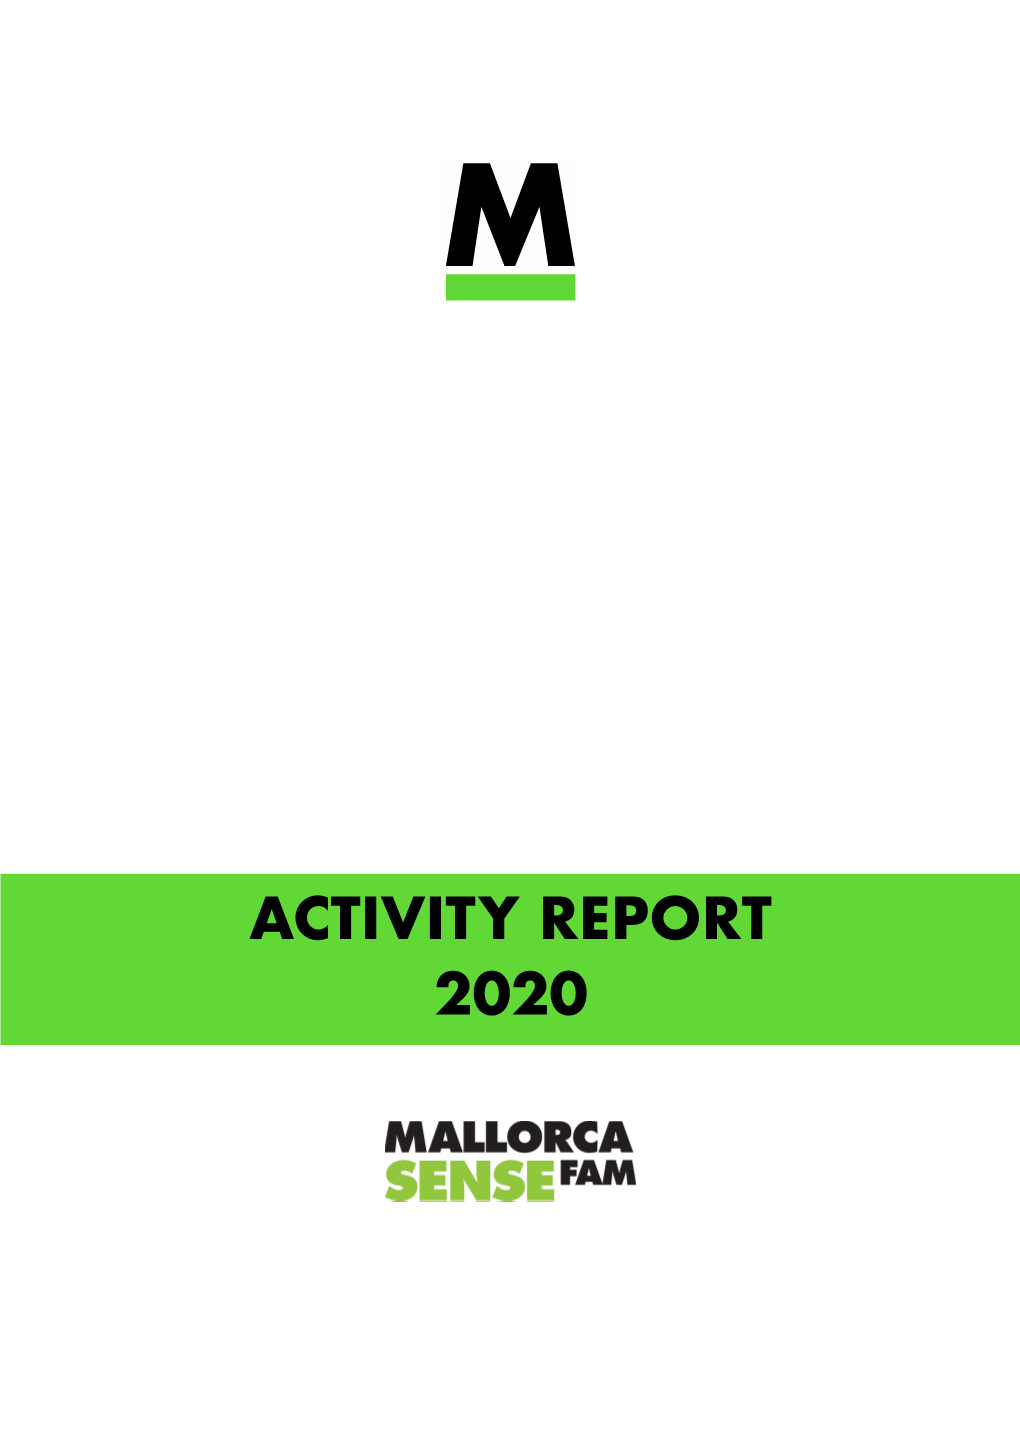 ACTIITY REPORT 2020 Copia